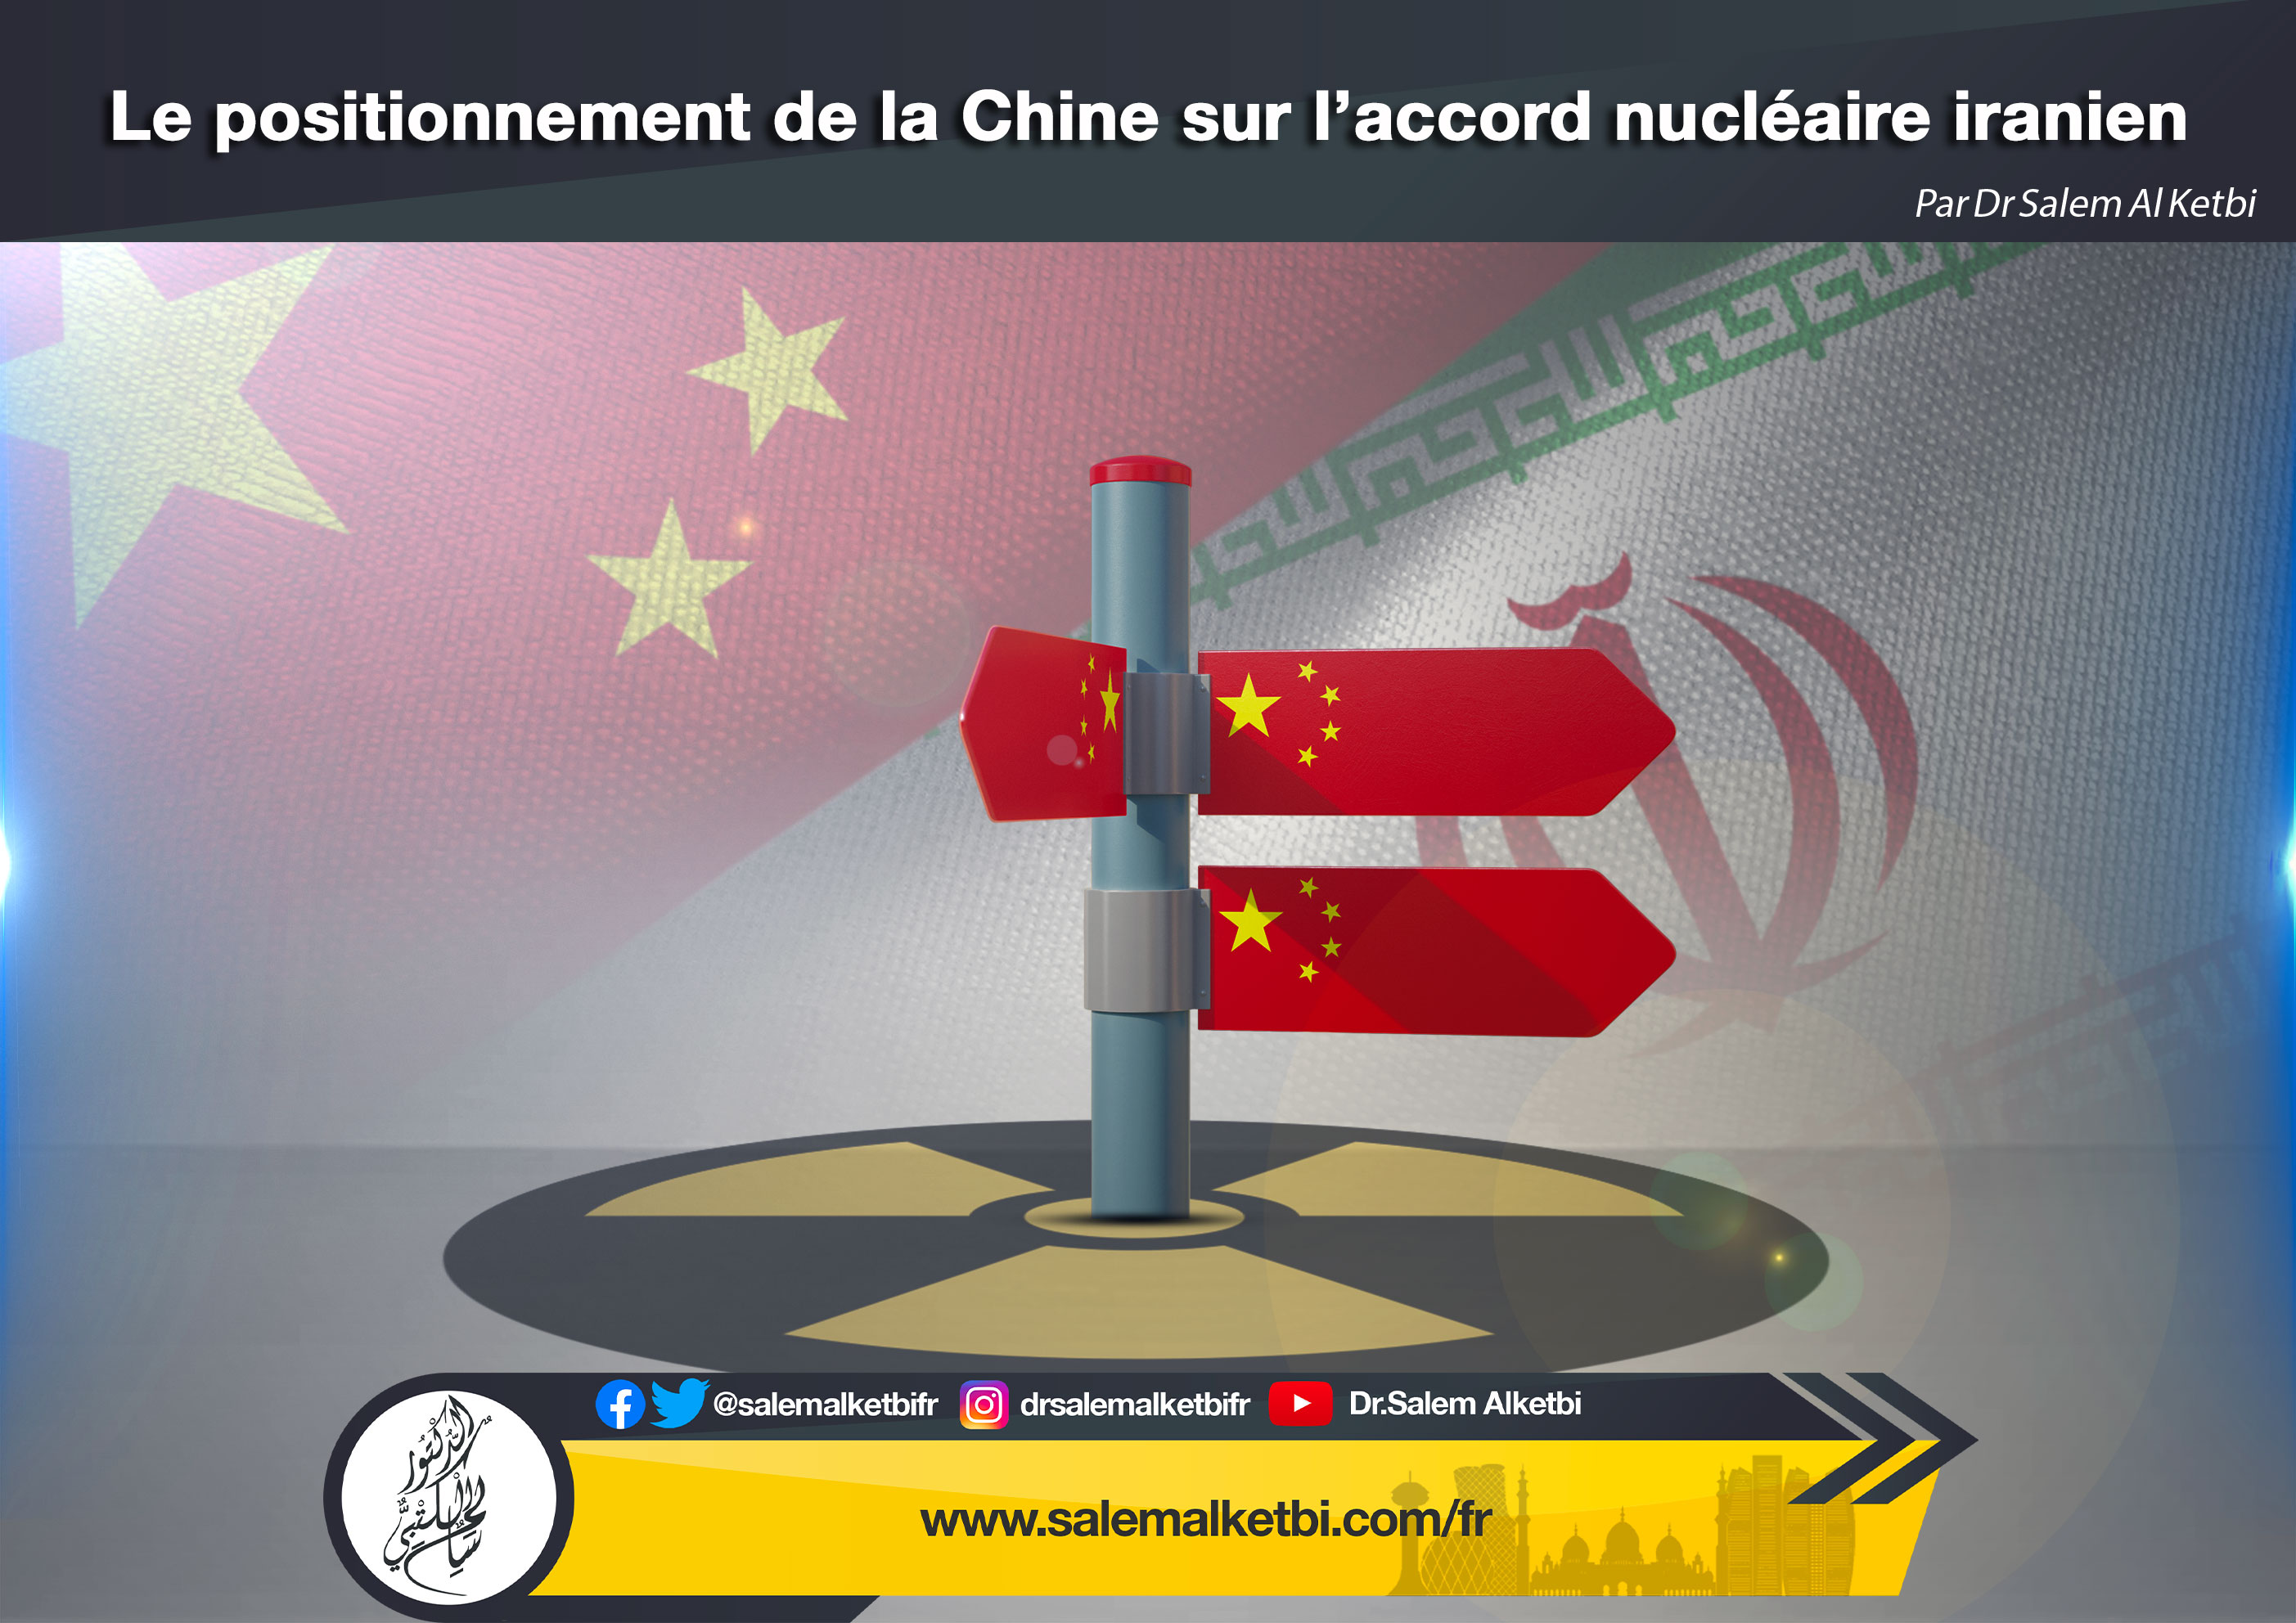 Le positionnement de la Chine sur l'accord nucléaire iranien